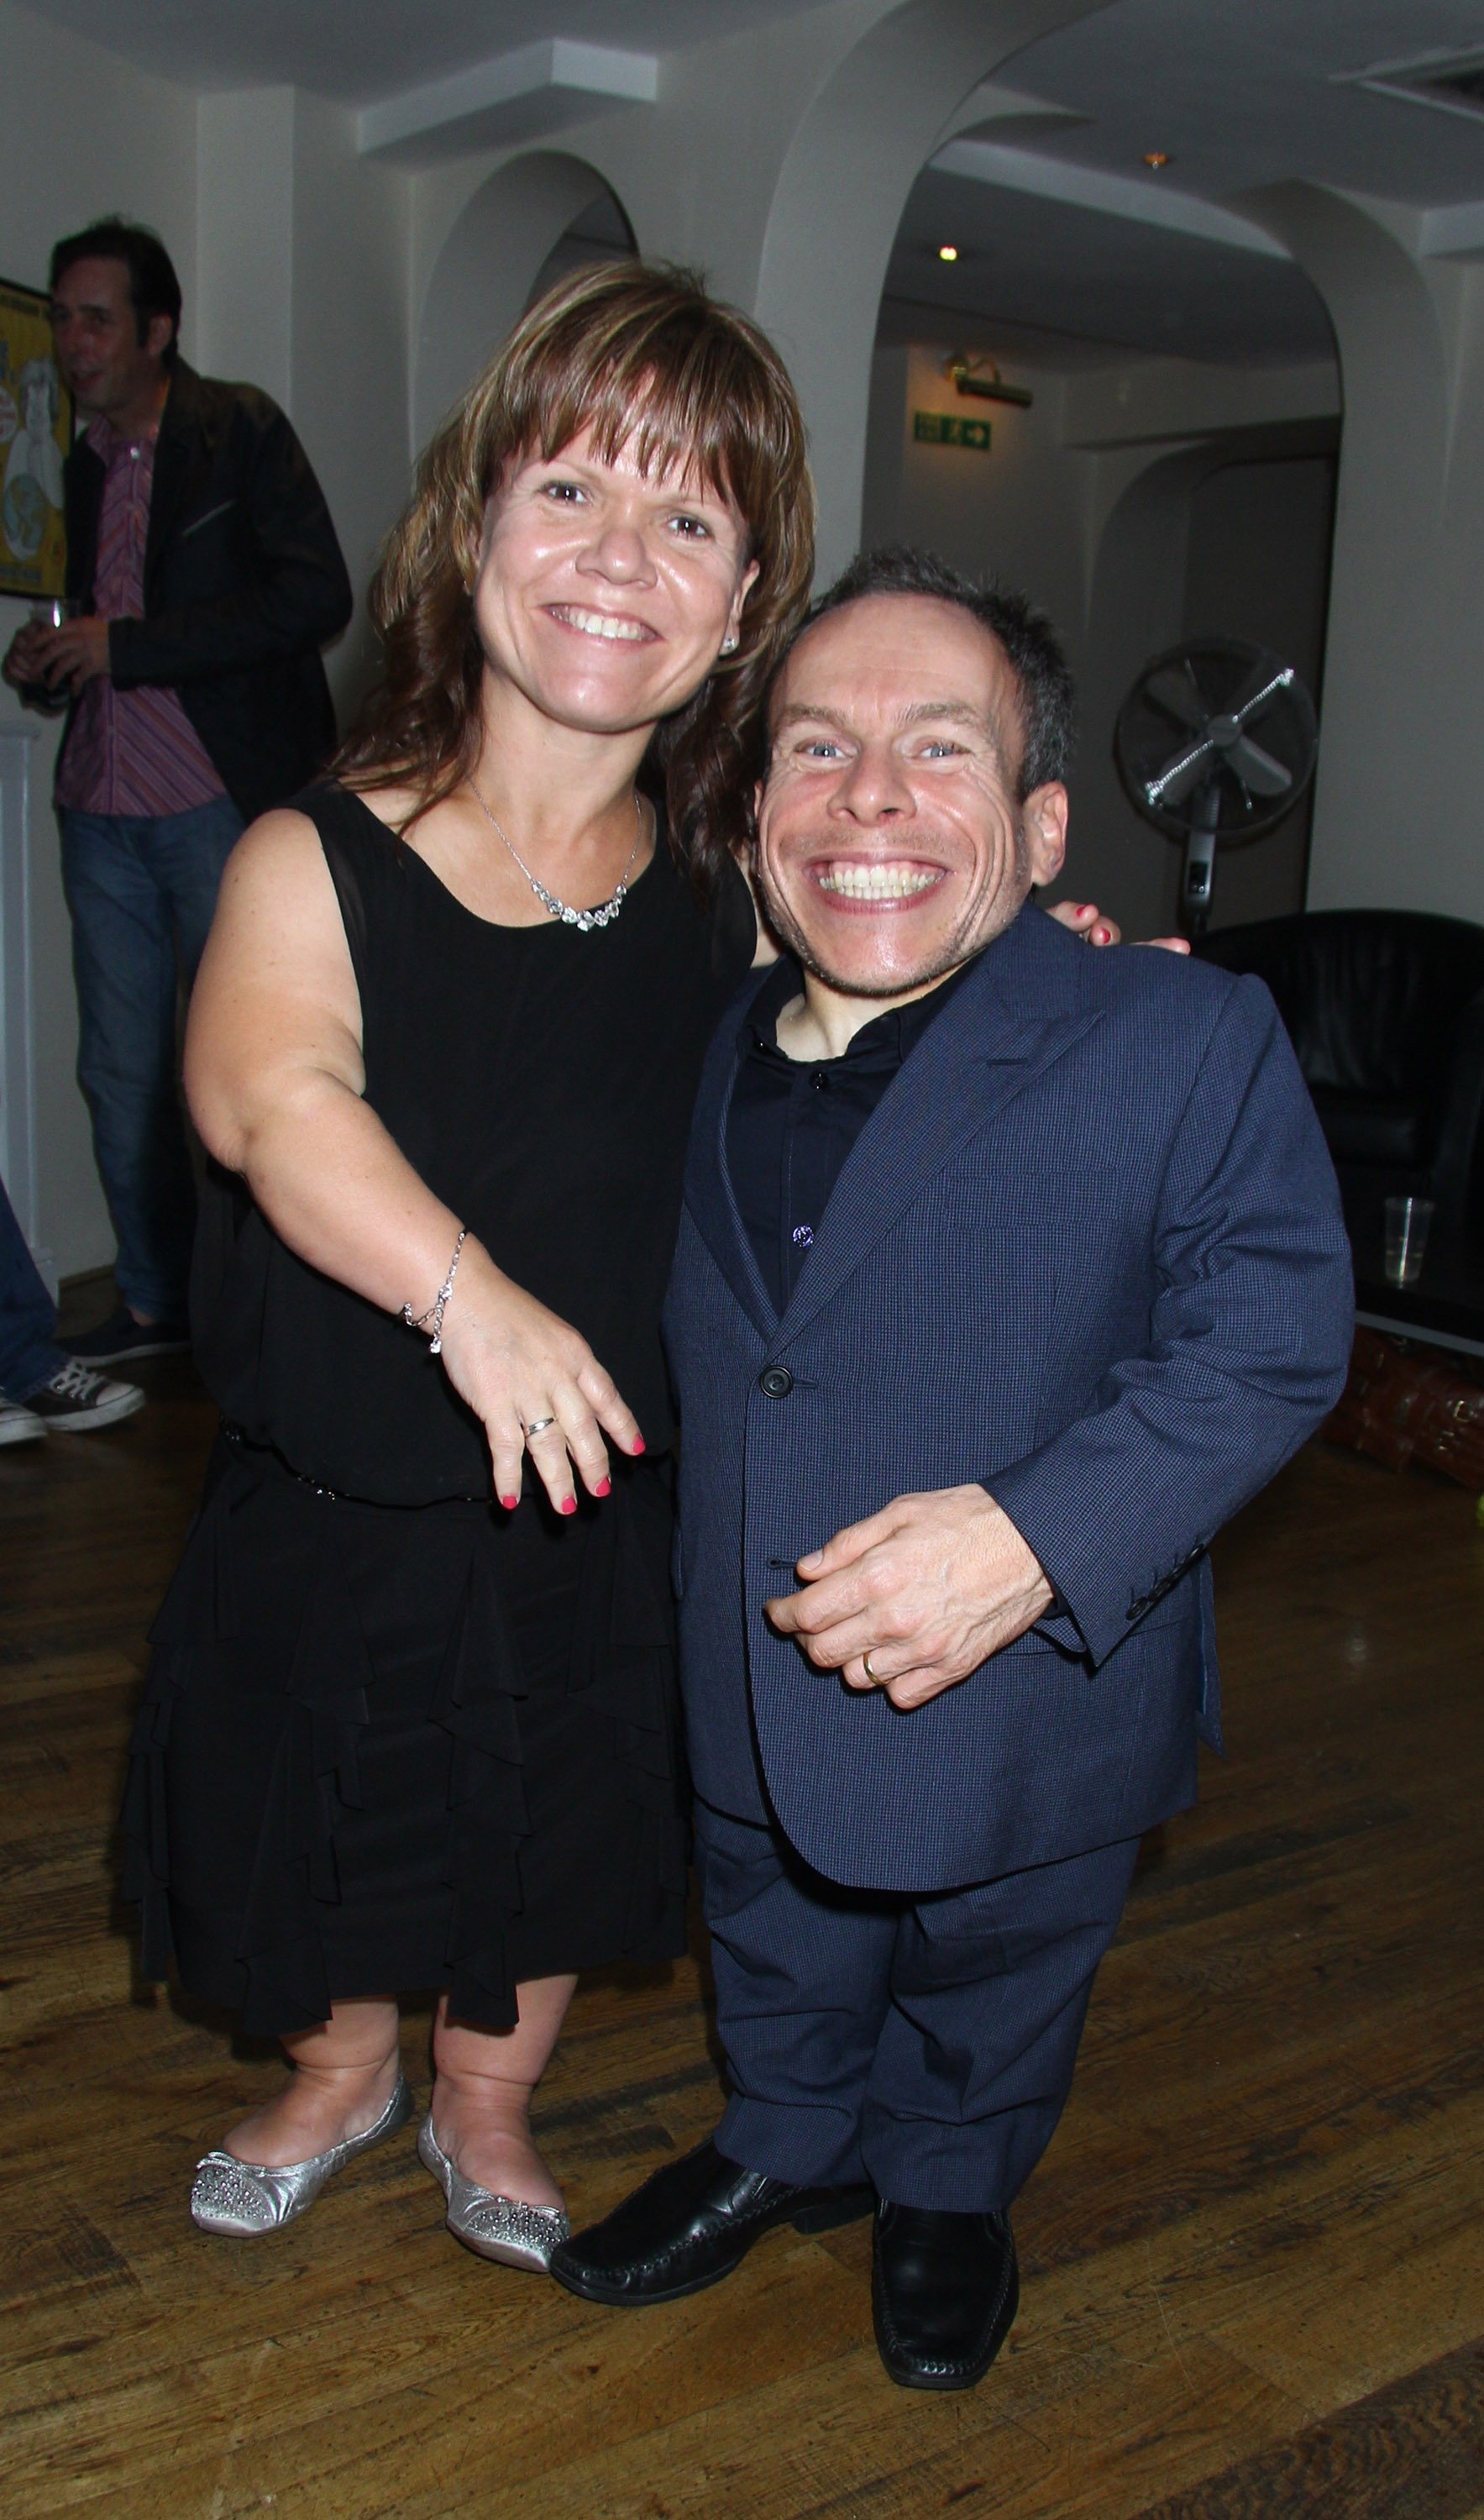 Ο ηθοποιός Warrick Davis ποζάρει με τη σύζυγό του Samantha Davis (L) καθώς εντάσσεται στο West End Cast του "Spamalot" κατά τη διάρκεια της "Spamalot" Press Night στο Playhouse Theatre στις 24 Σεπτεμβρίου 2013 στο Λονδίνο, Αγγλία.  |  Πηγή: Getty Images